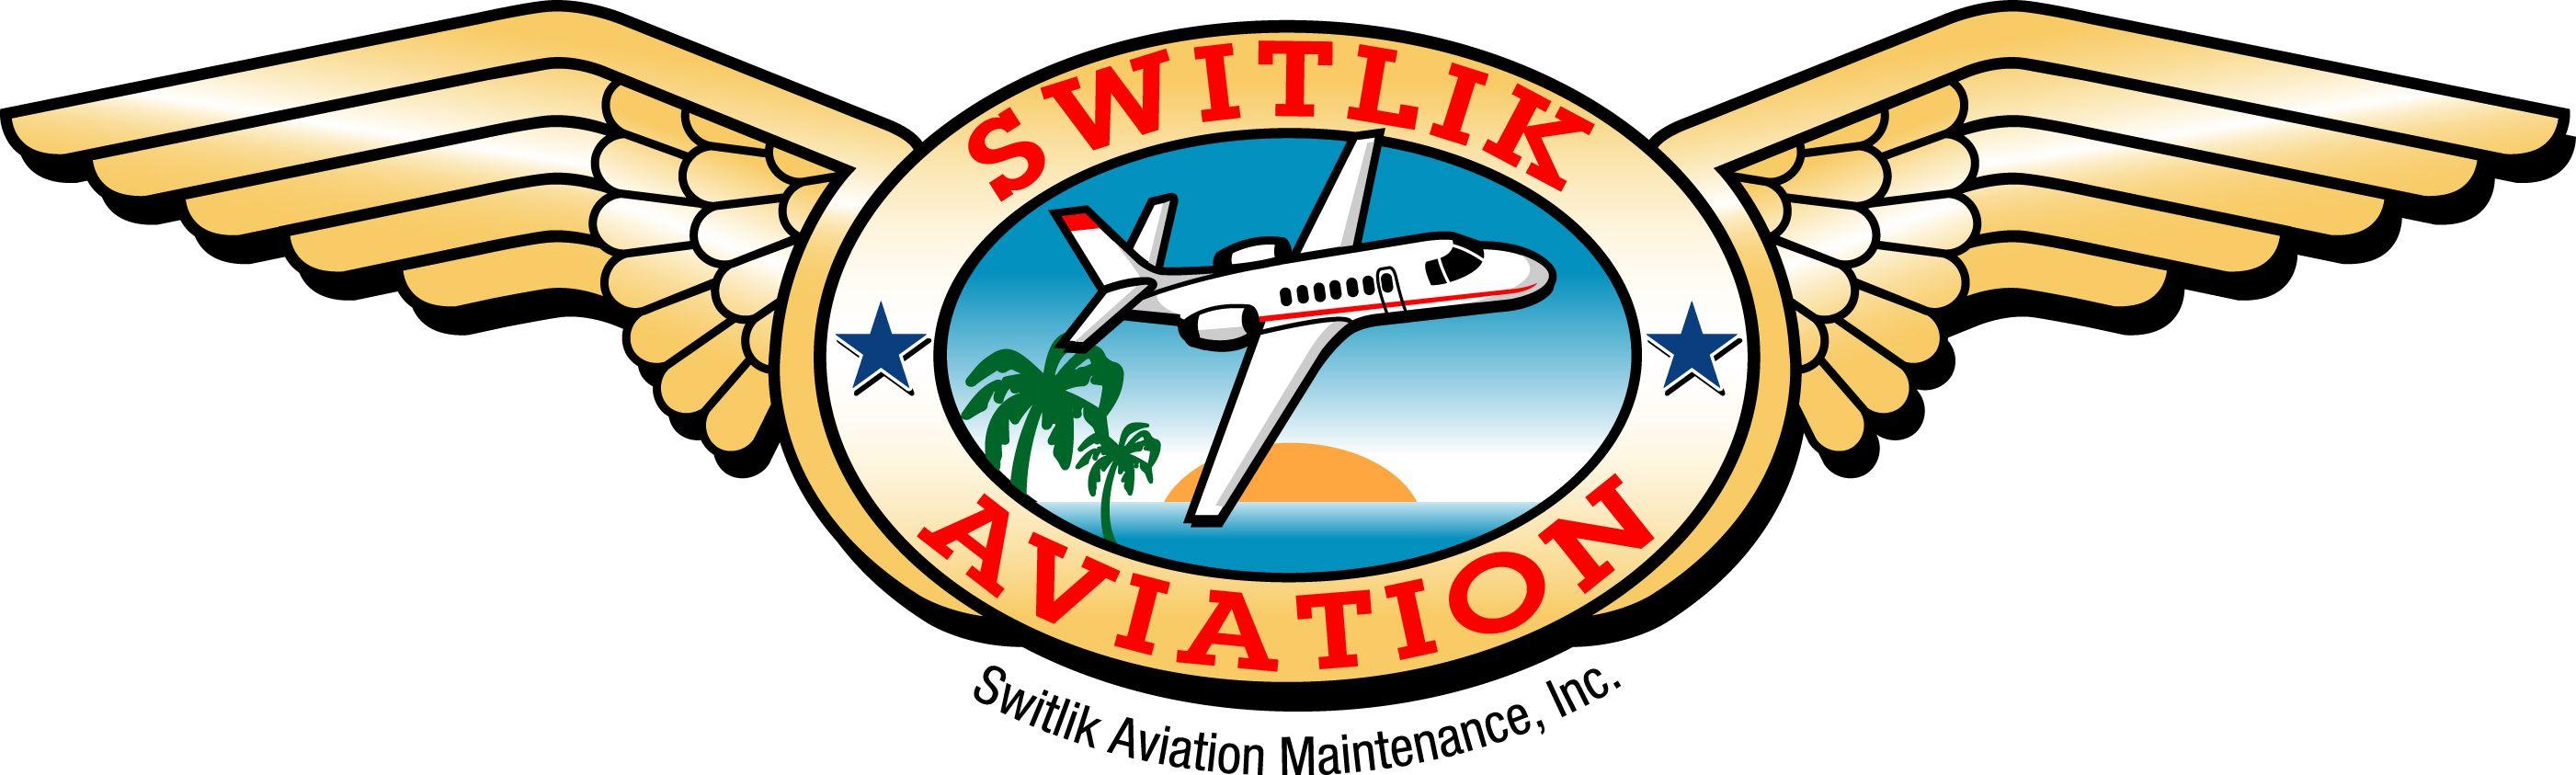 Aircraft Maintenance Logo - Page Field | Aircraft Repair